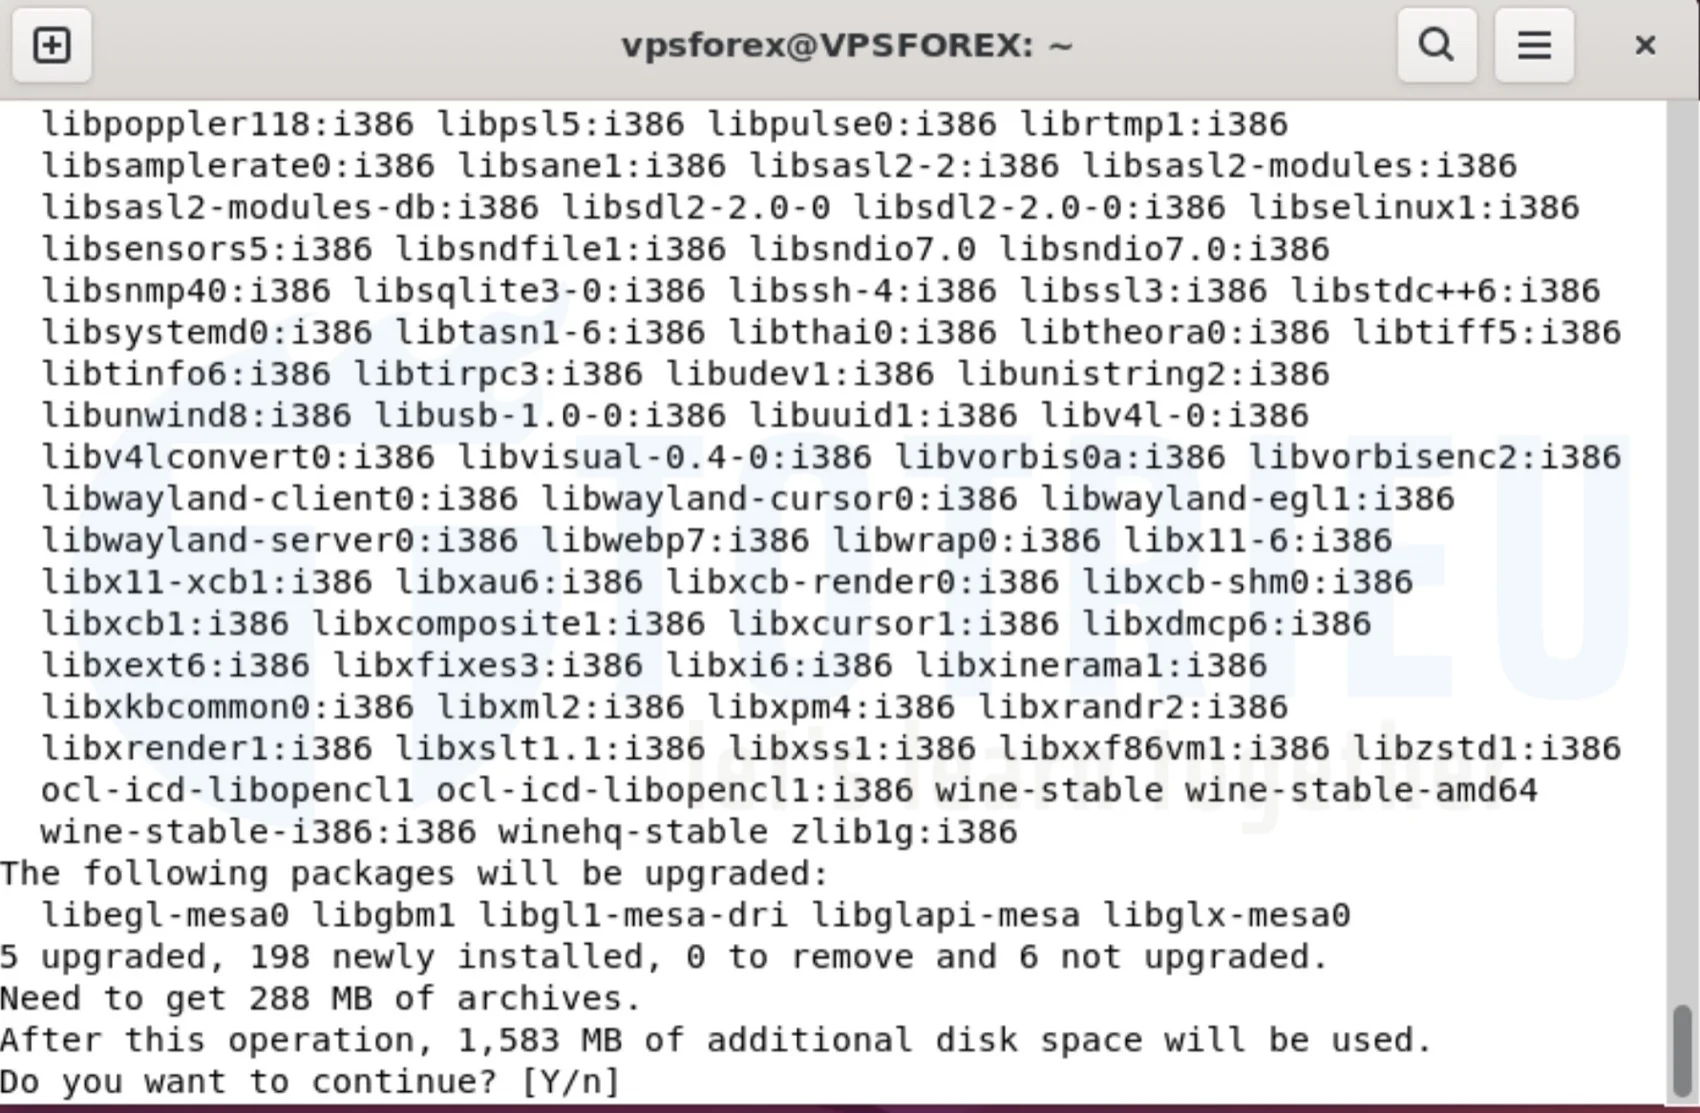 Chấp nhận cài đặt WineHQ trên VPS Forex Ubuntu